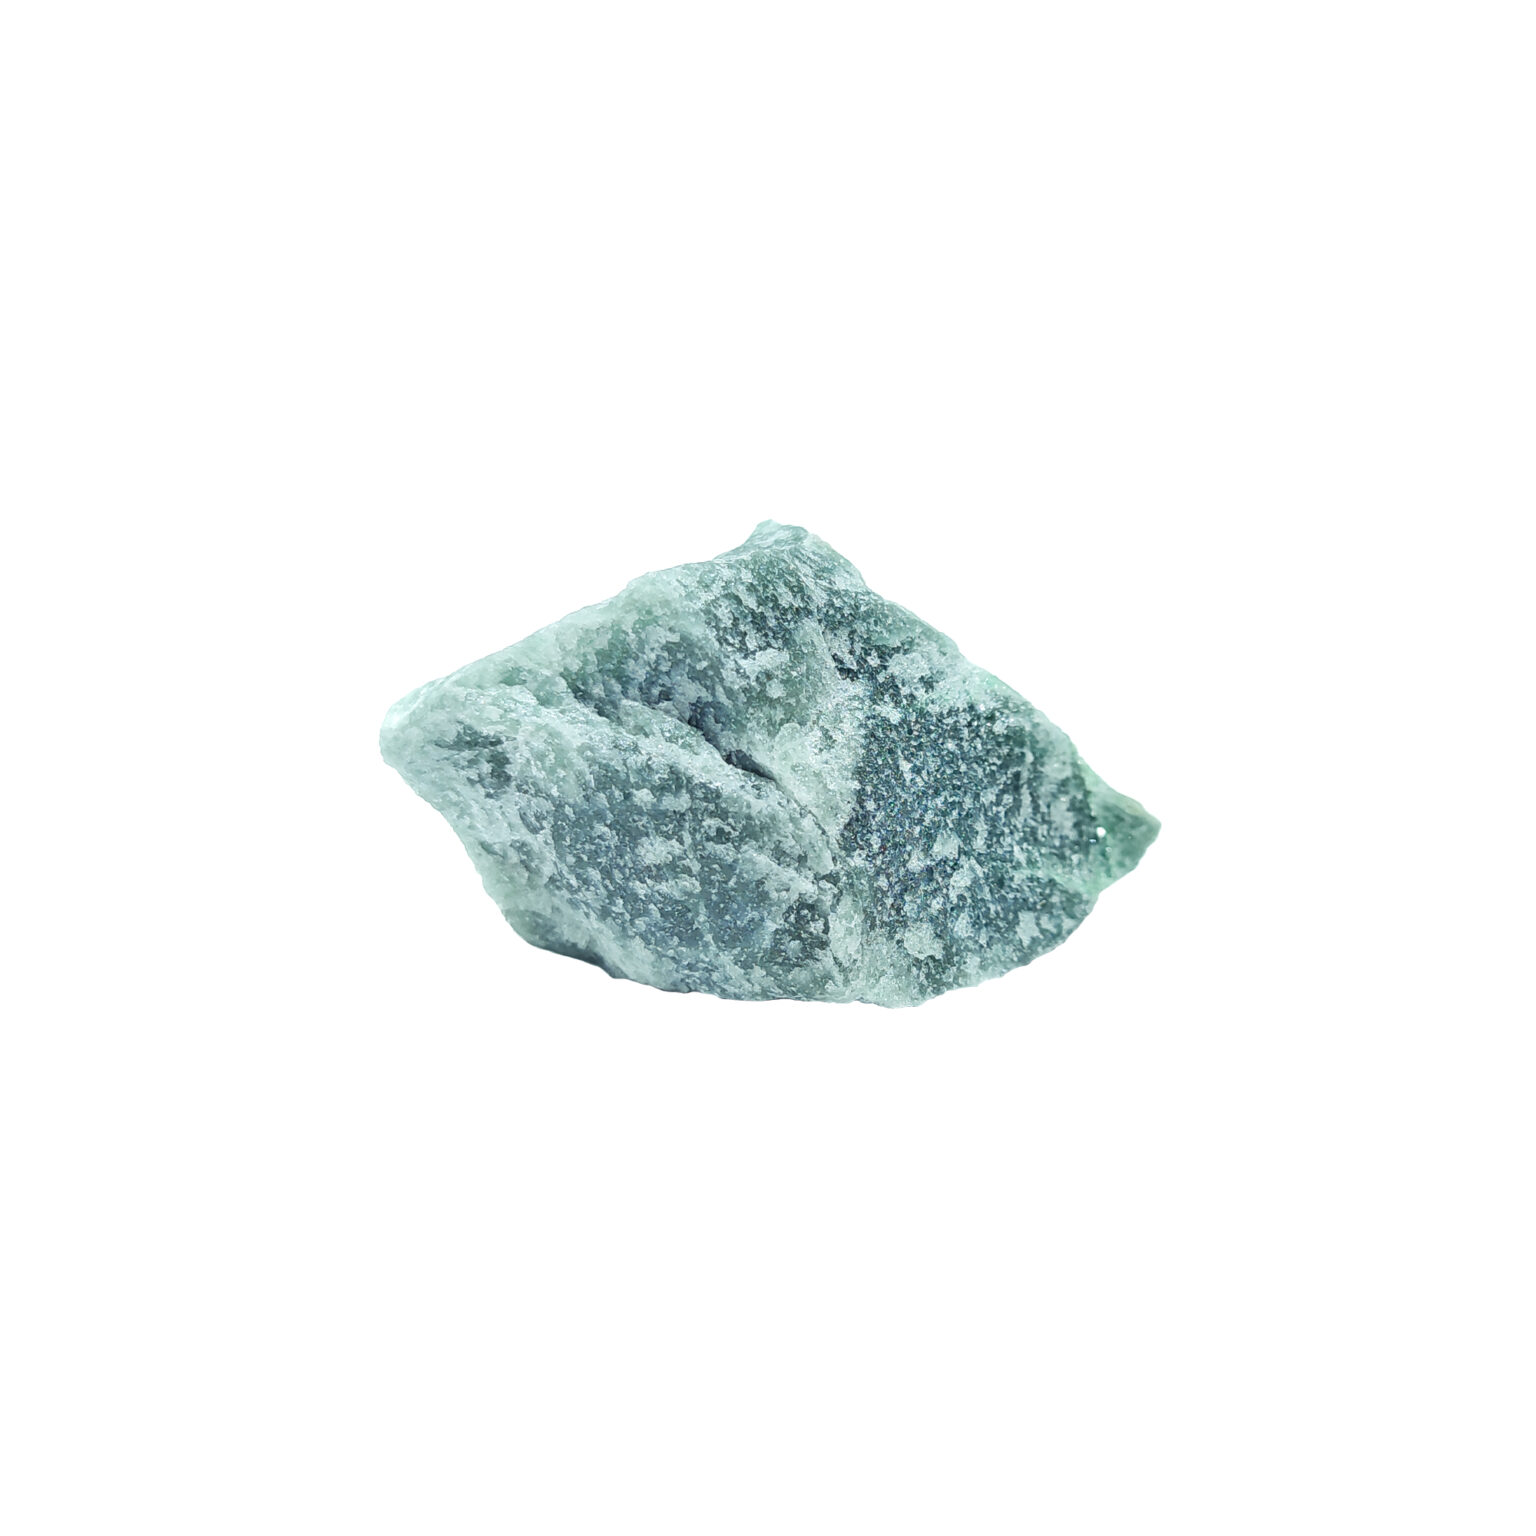 Grüner Aventurin mit ausgeprägtem Glimmer in den Kristallen.